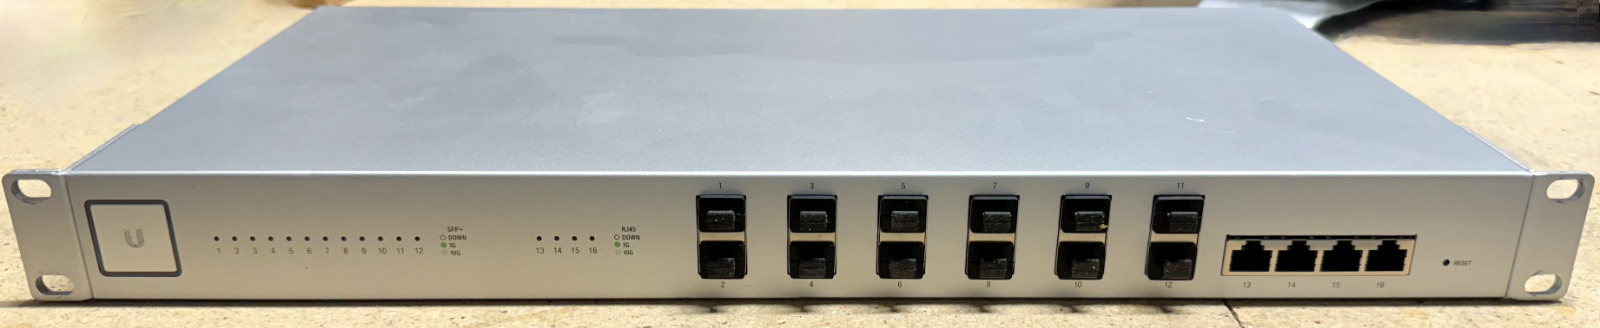 Ubiquiti Networks UniFi US-16-XG 10G 16-Port Managed Aggregation Switch